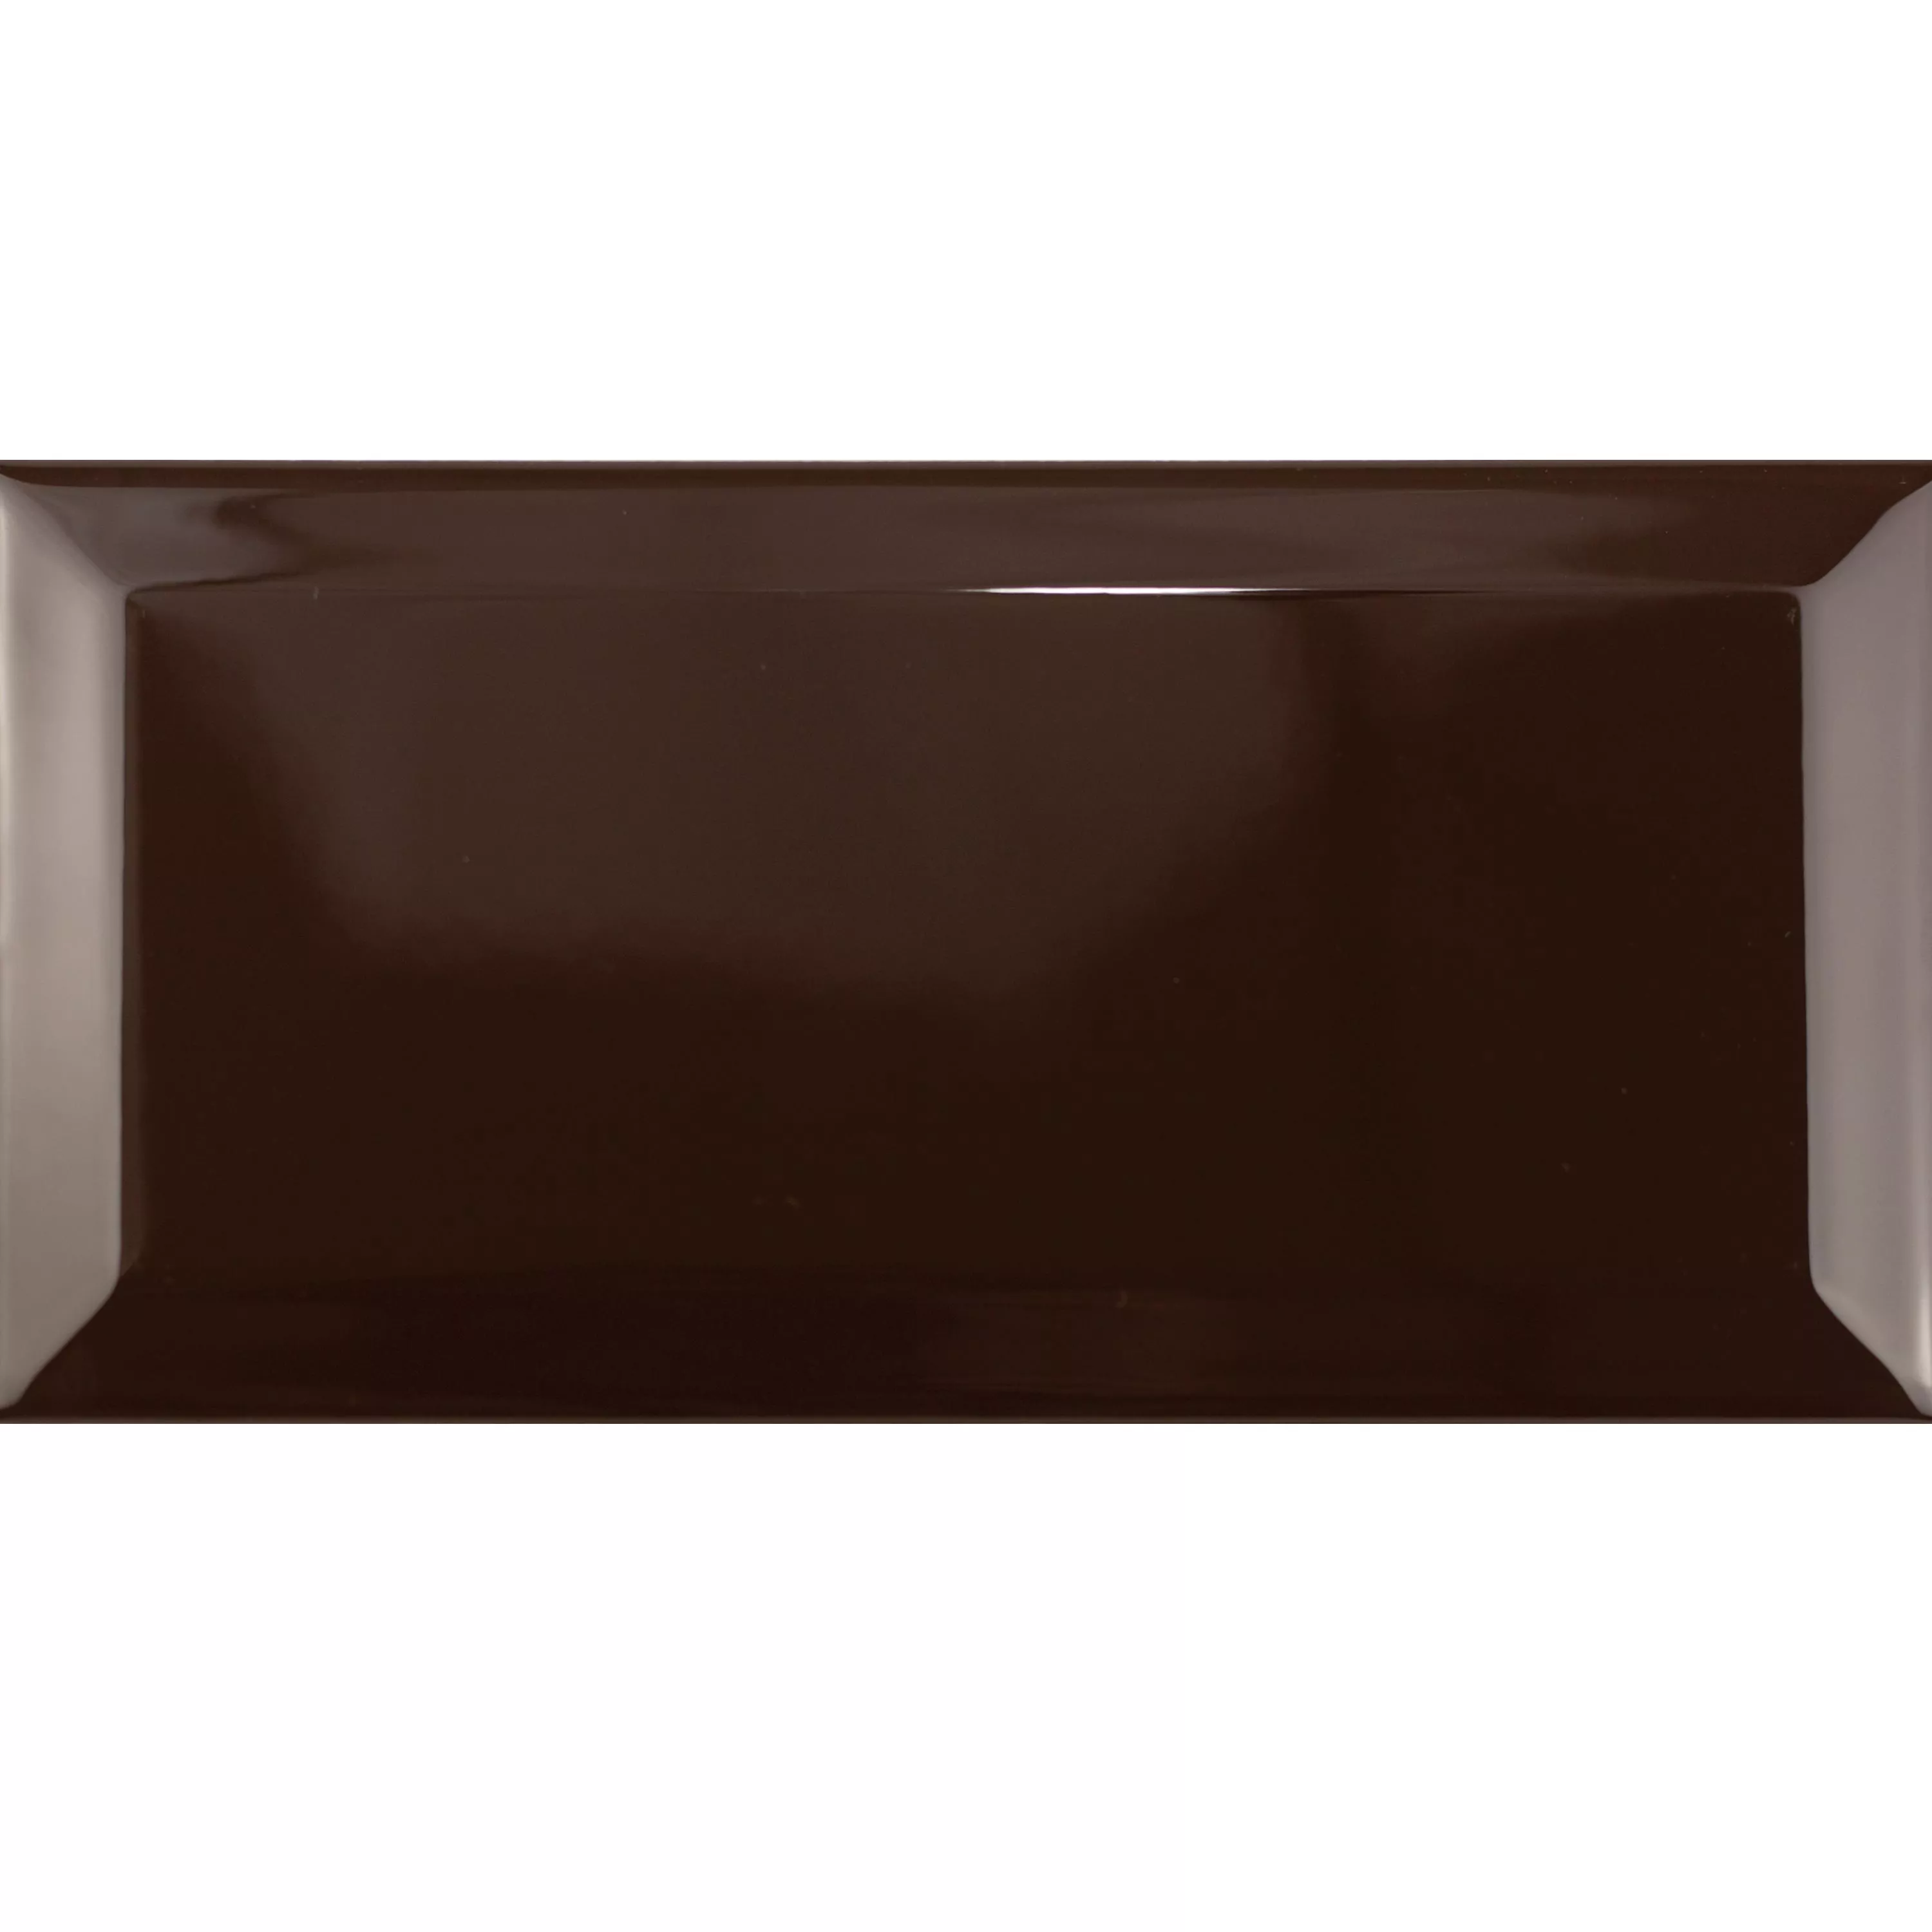 Metro Zidne Pločice Brussel Faceta 10x20x0,7cm Chocolate